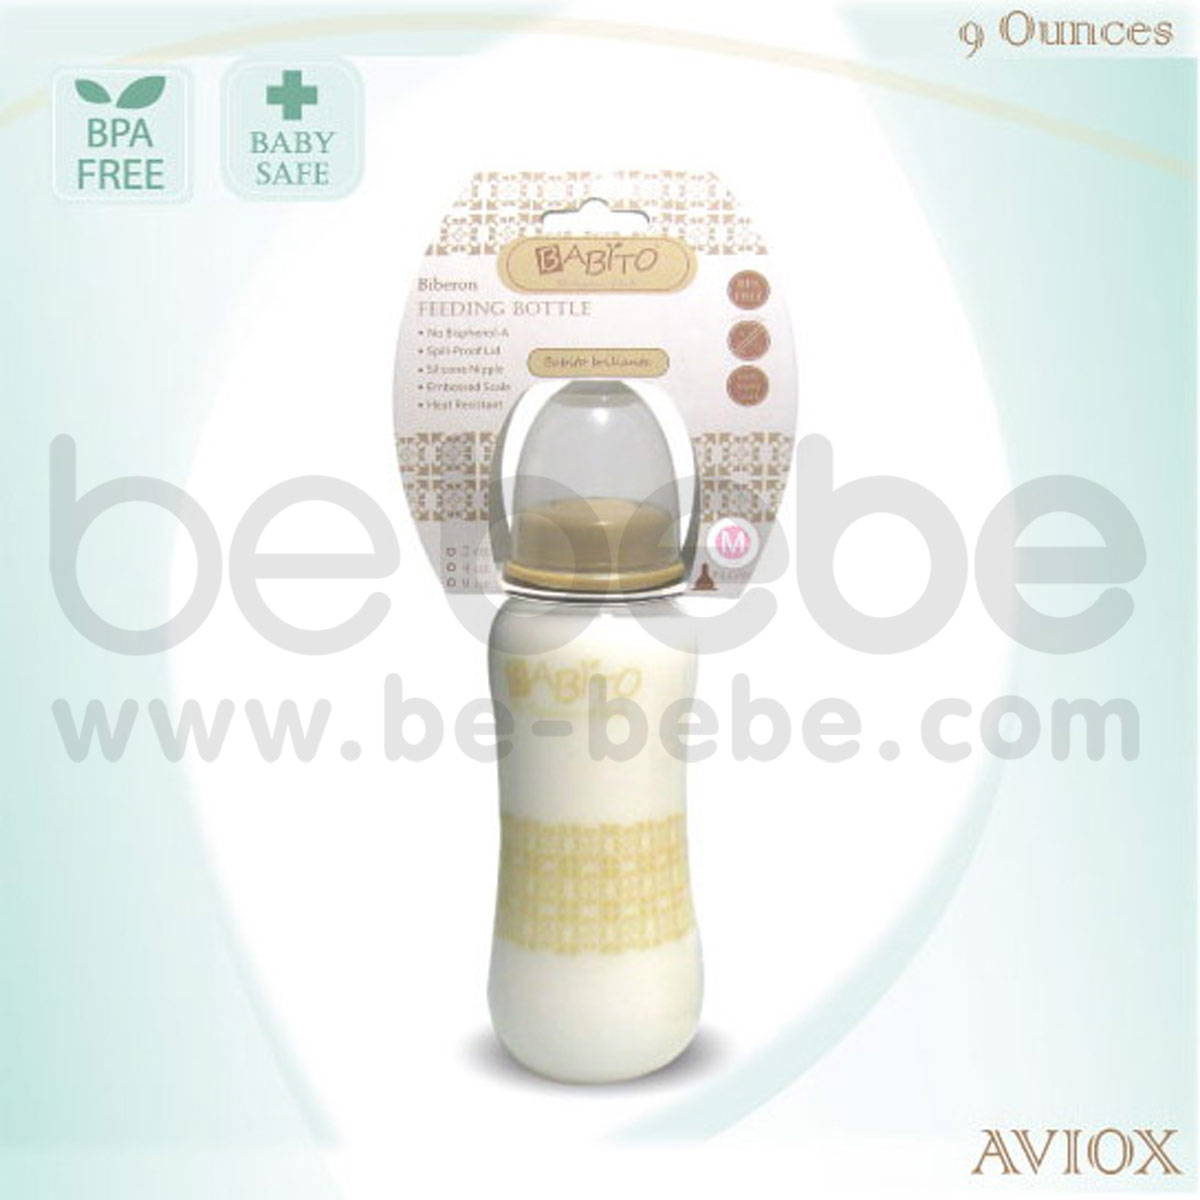 BABITO : ขวดนม BPA-Free ขนาด 9oz รุ่น Aviox Budget